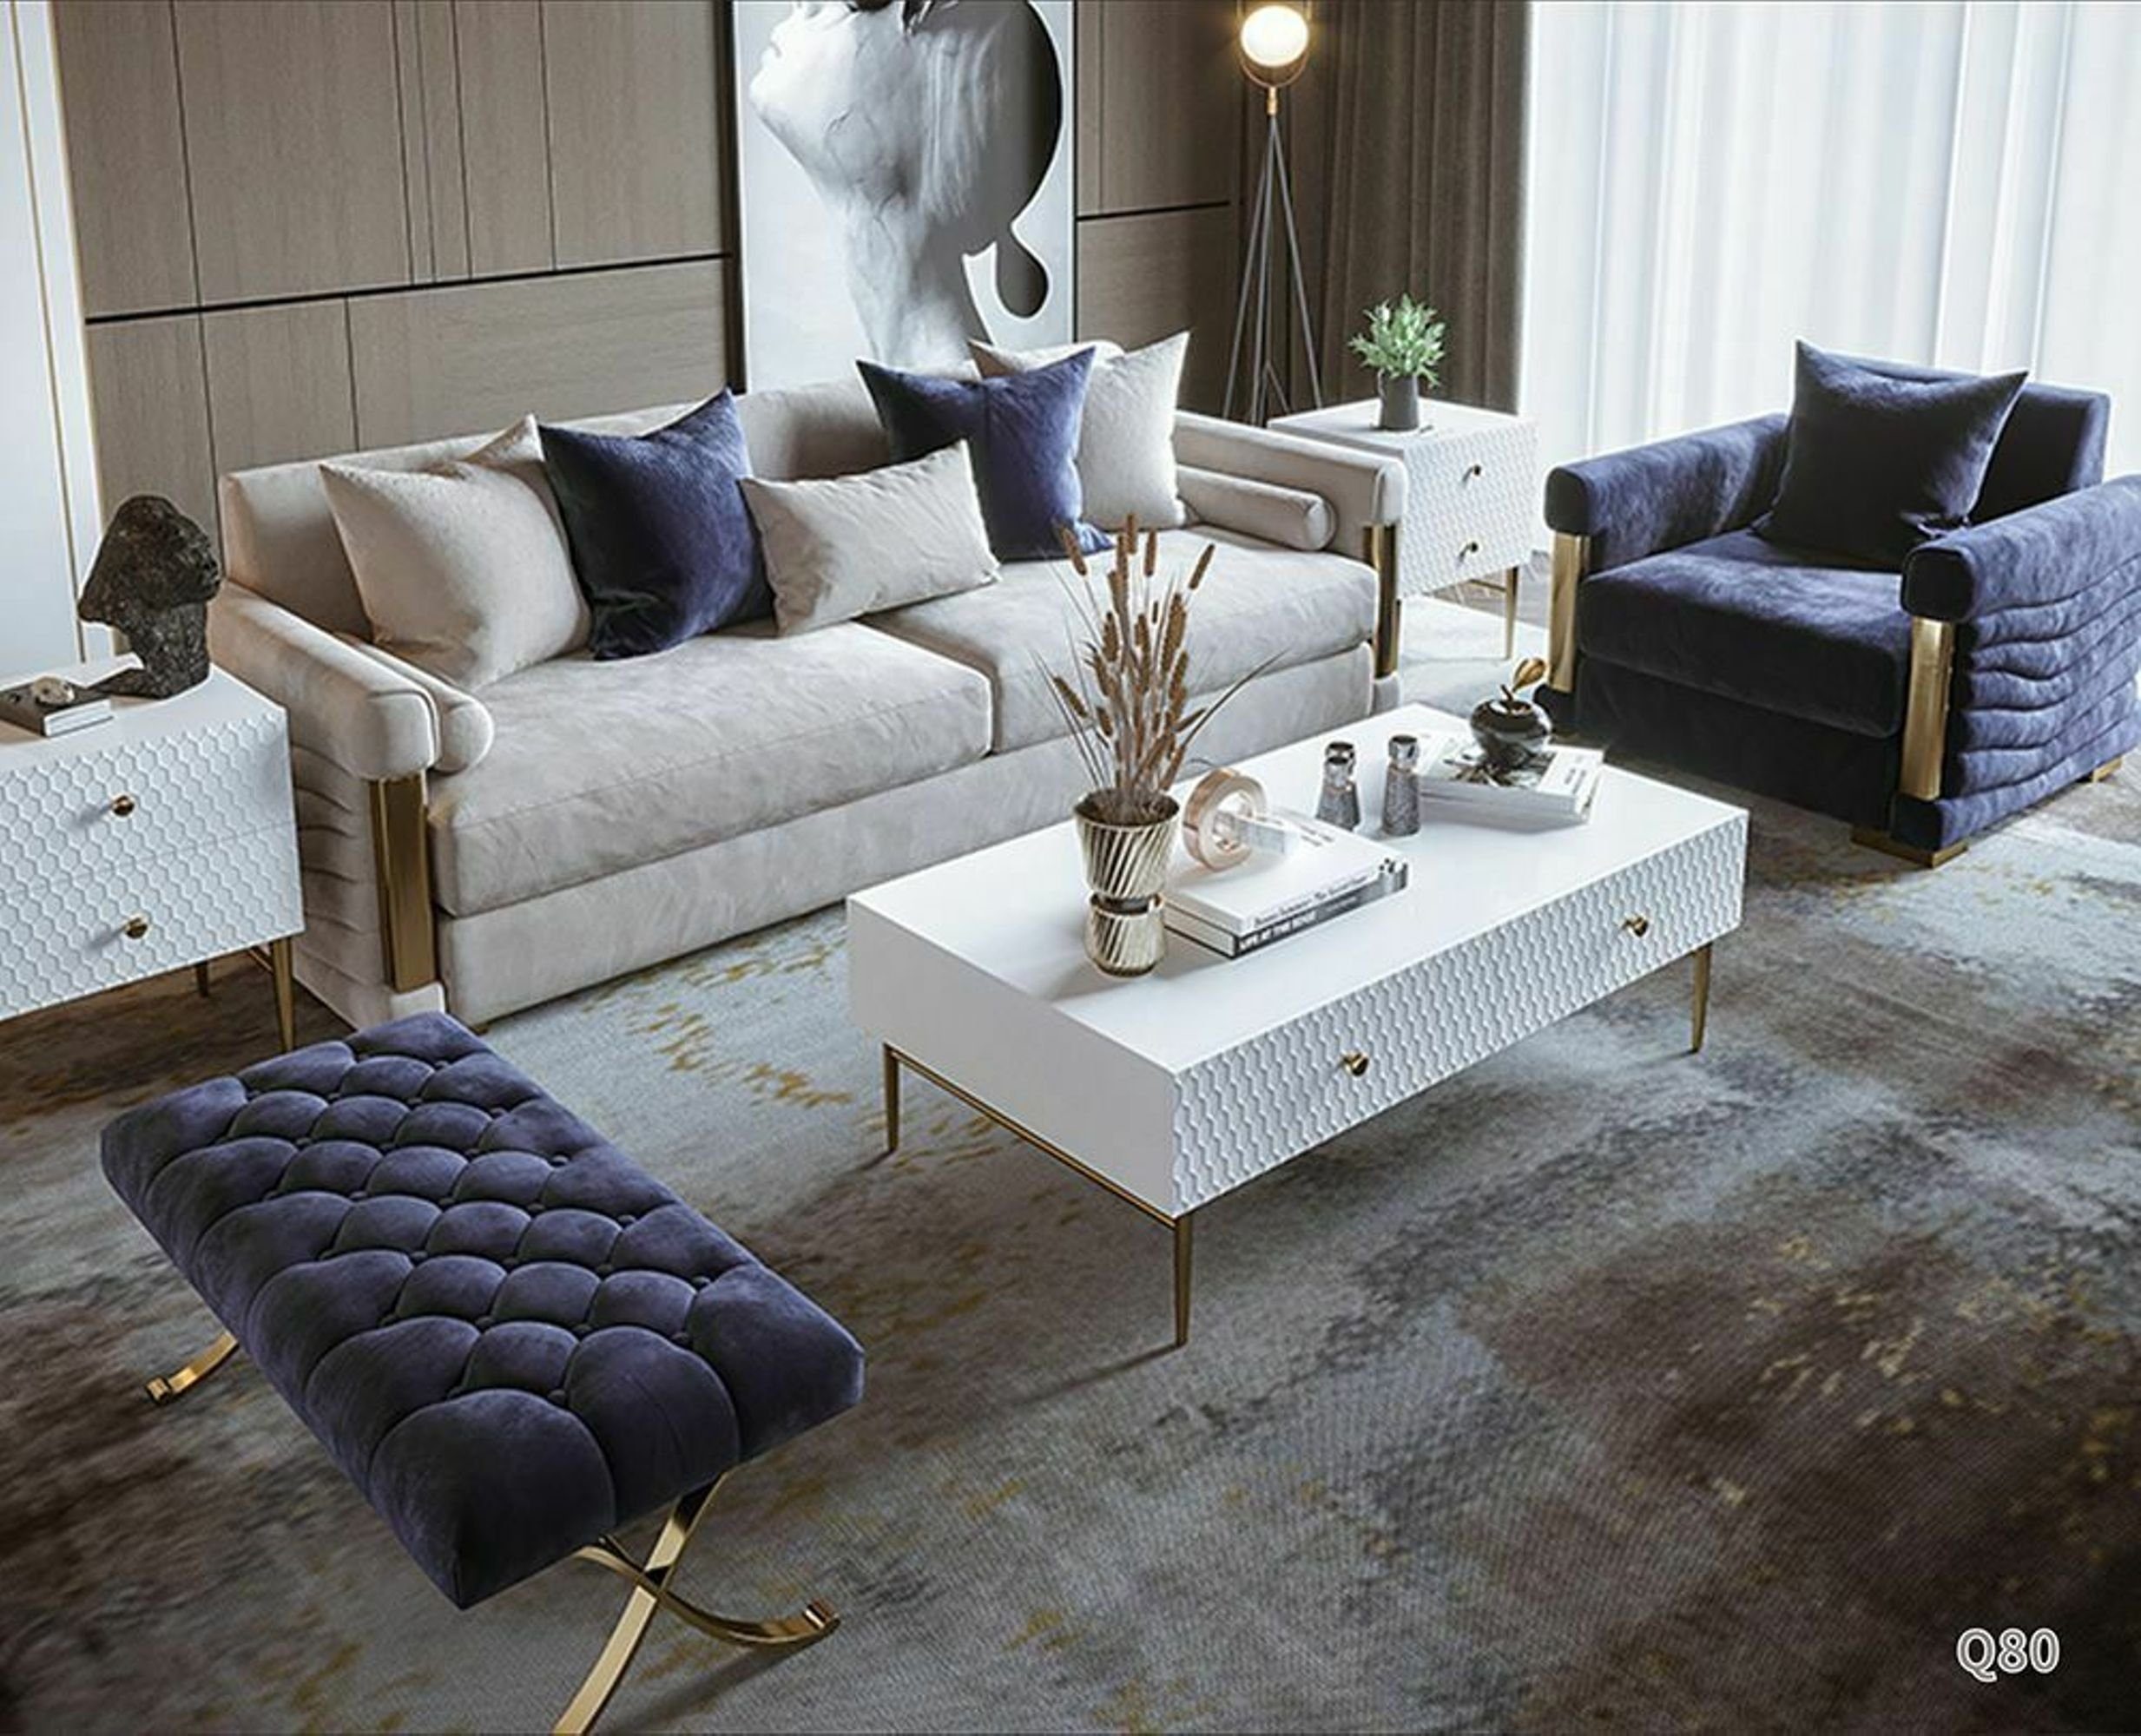 JVmoebel Sofa Europe Designer Couch 3+1 Made Sitzer, Sitz in Textil Garnituren Polster Garnitur